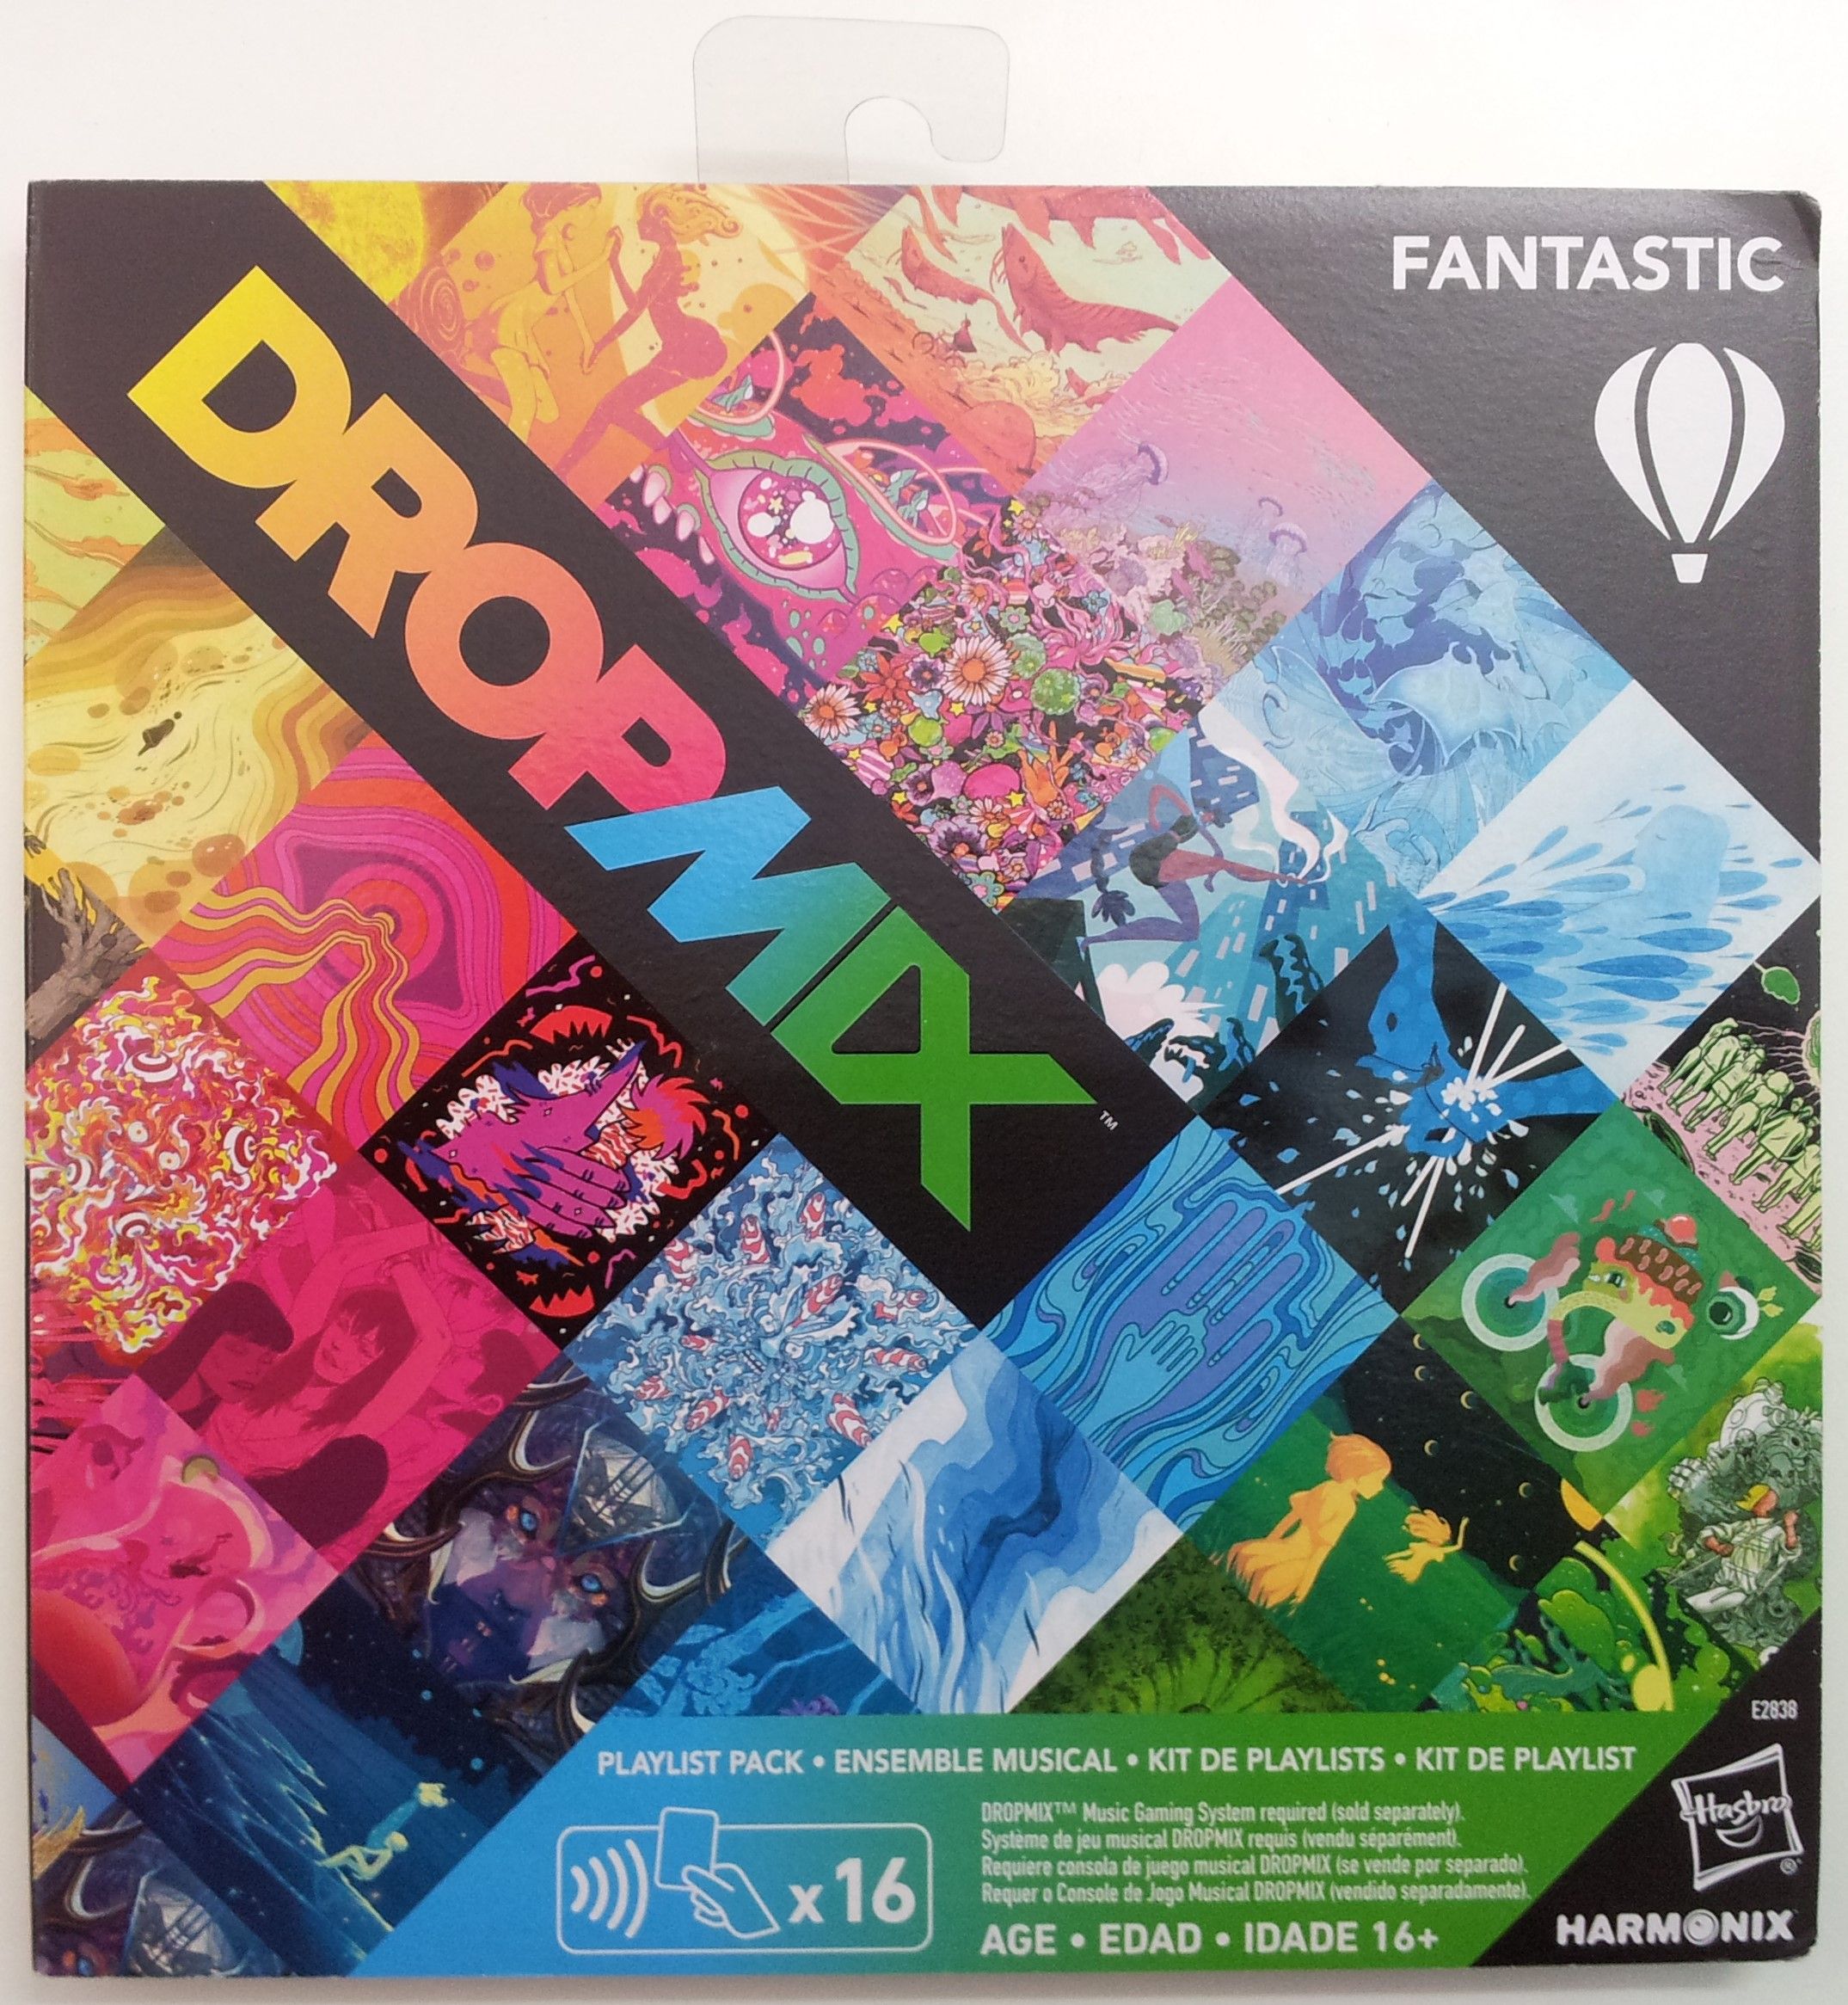 DropMix: Playlist Pack (Fantastic)